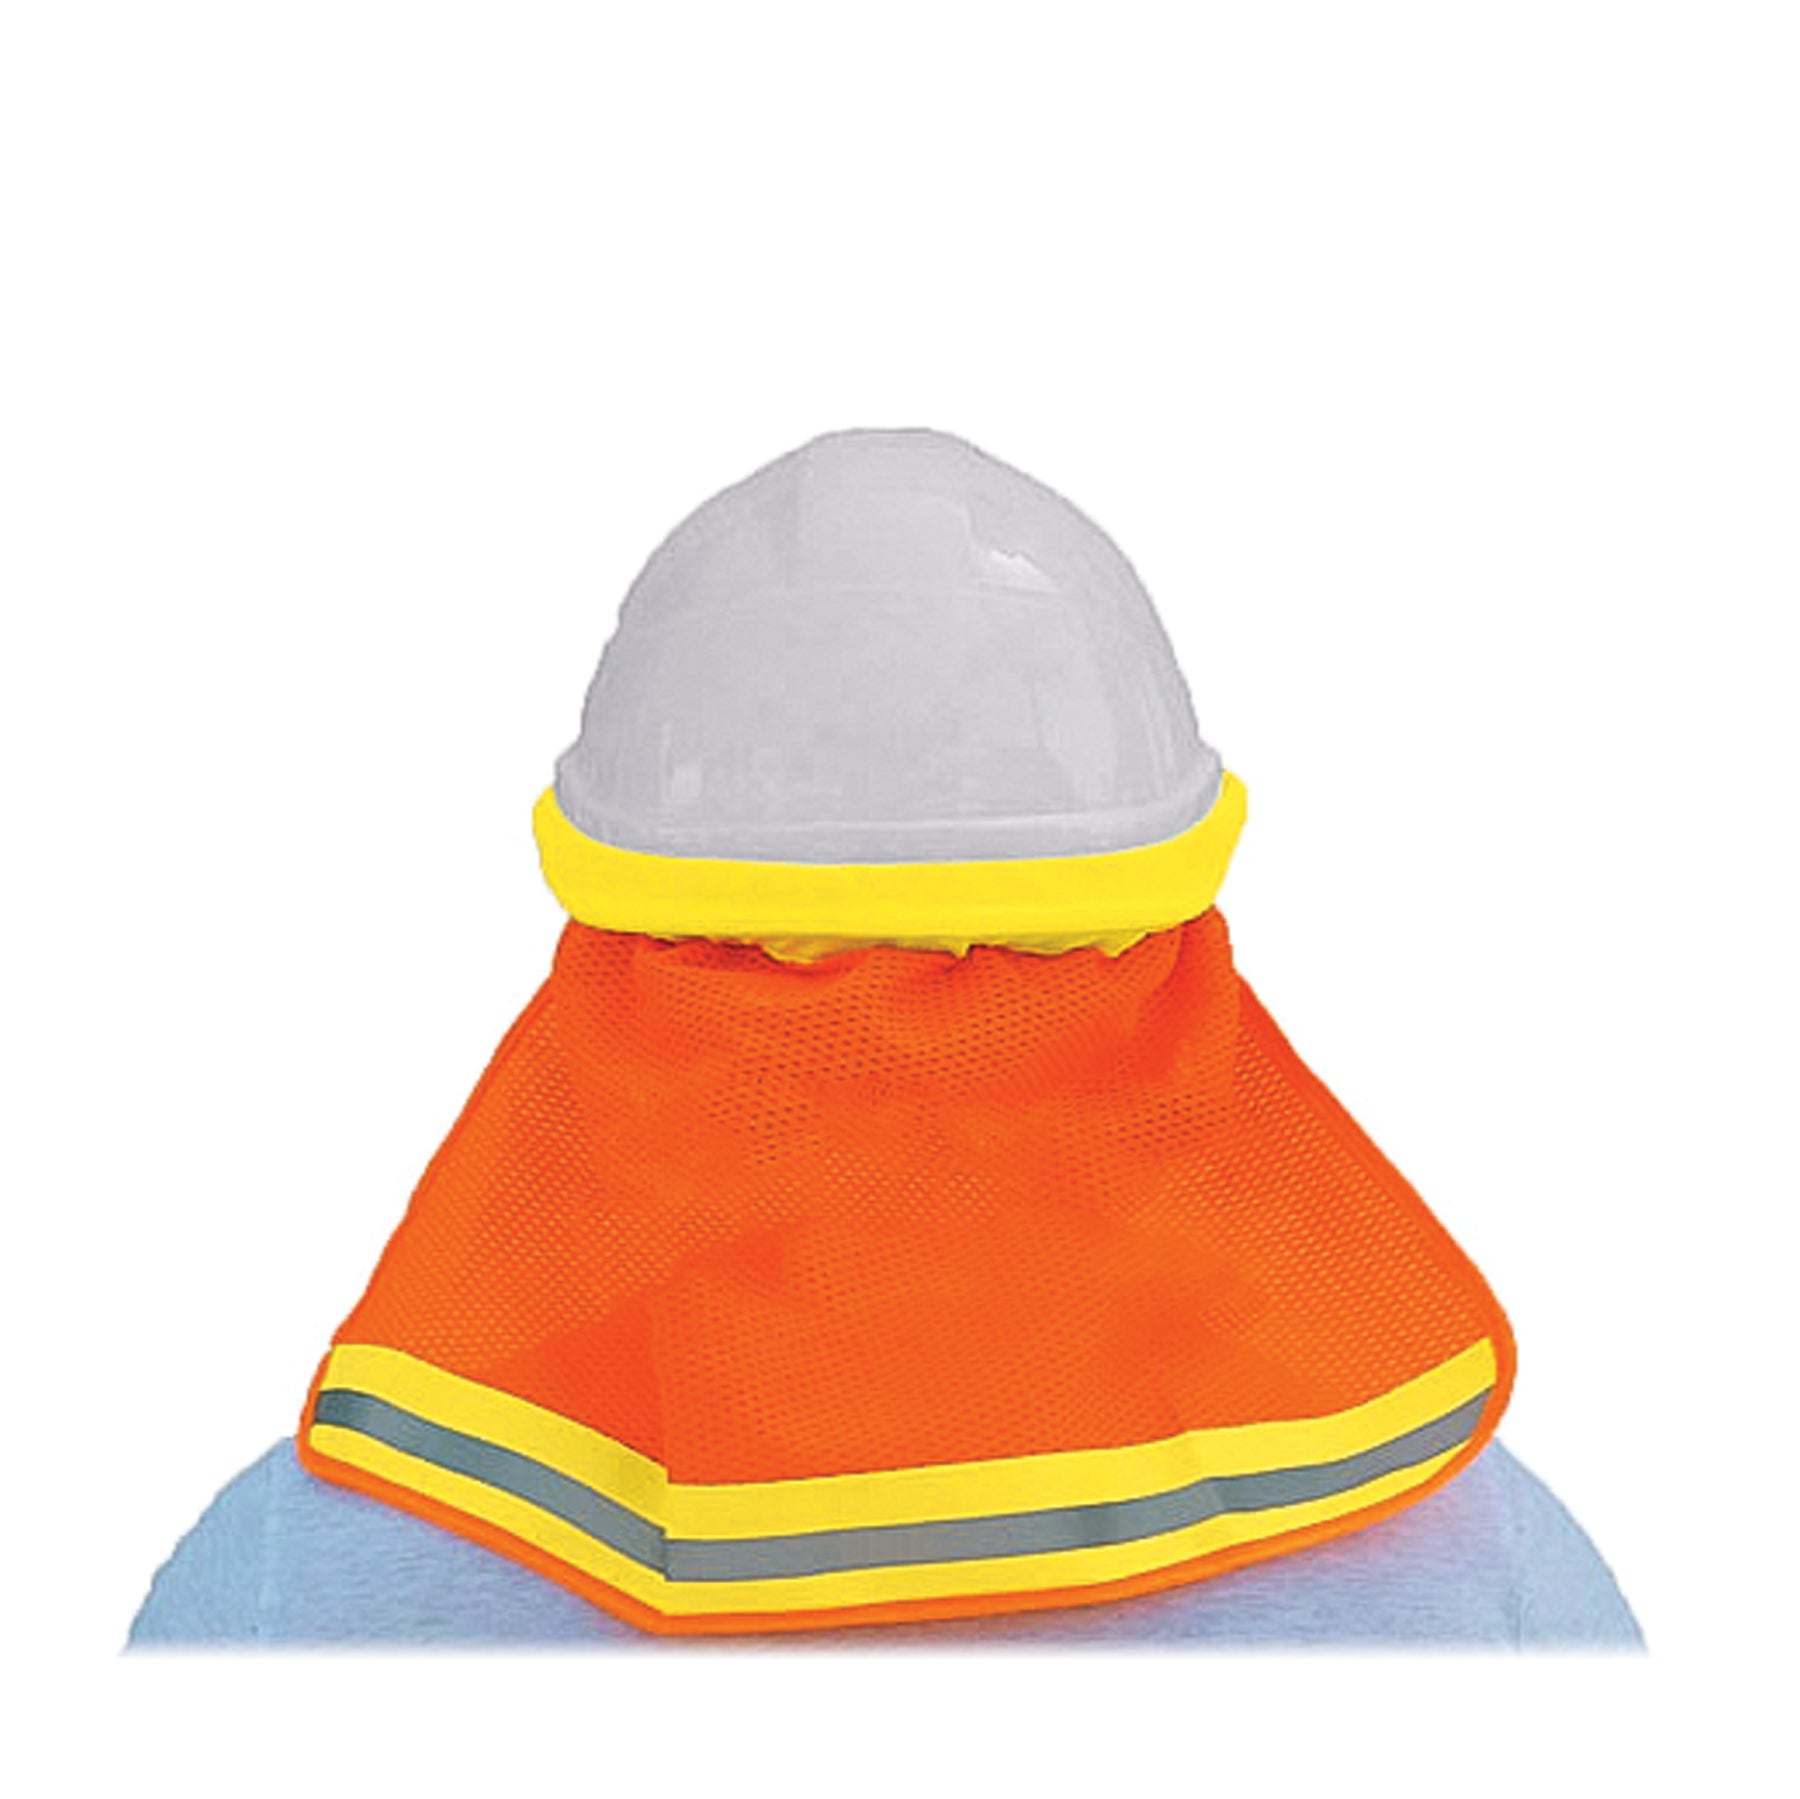 SitePro 23-SNC5600 Neck Shade for Hard Hats, Safety Orange